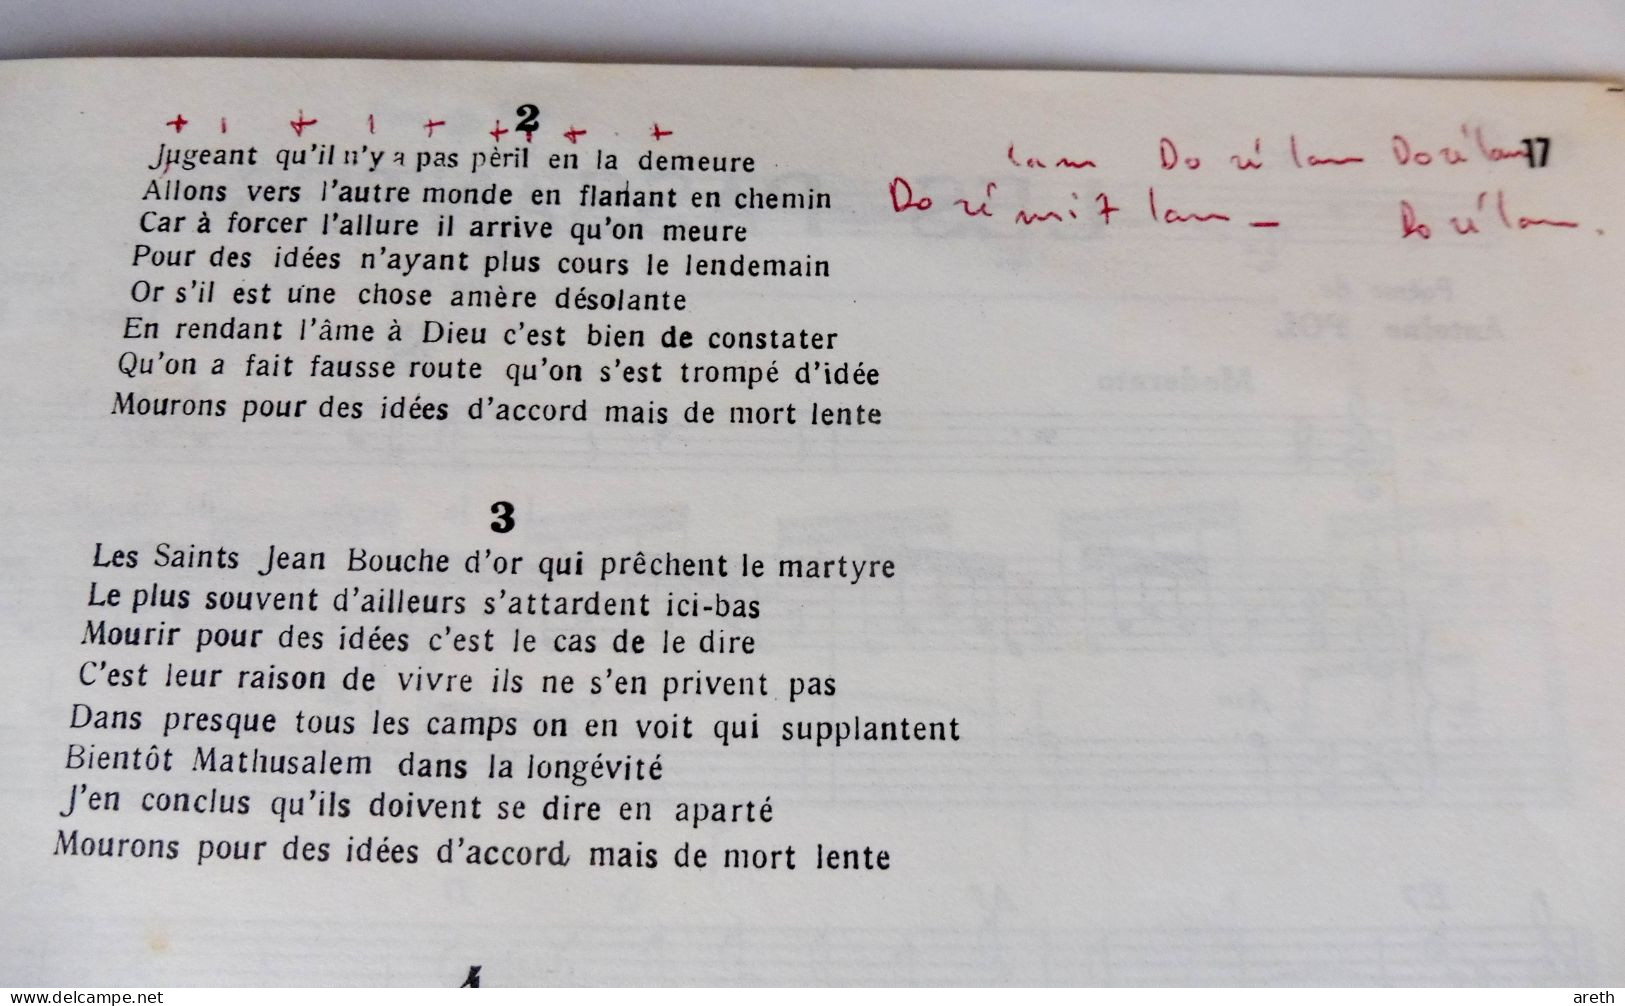 Georges Brassens - Album N° 13, 11 Titres ~ Paroles Et Musiques - Jazz